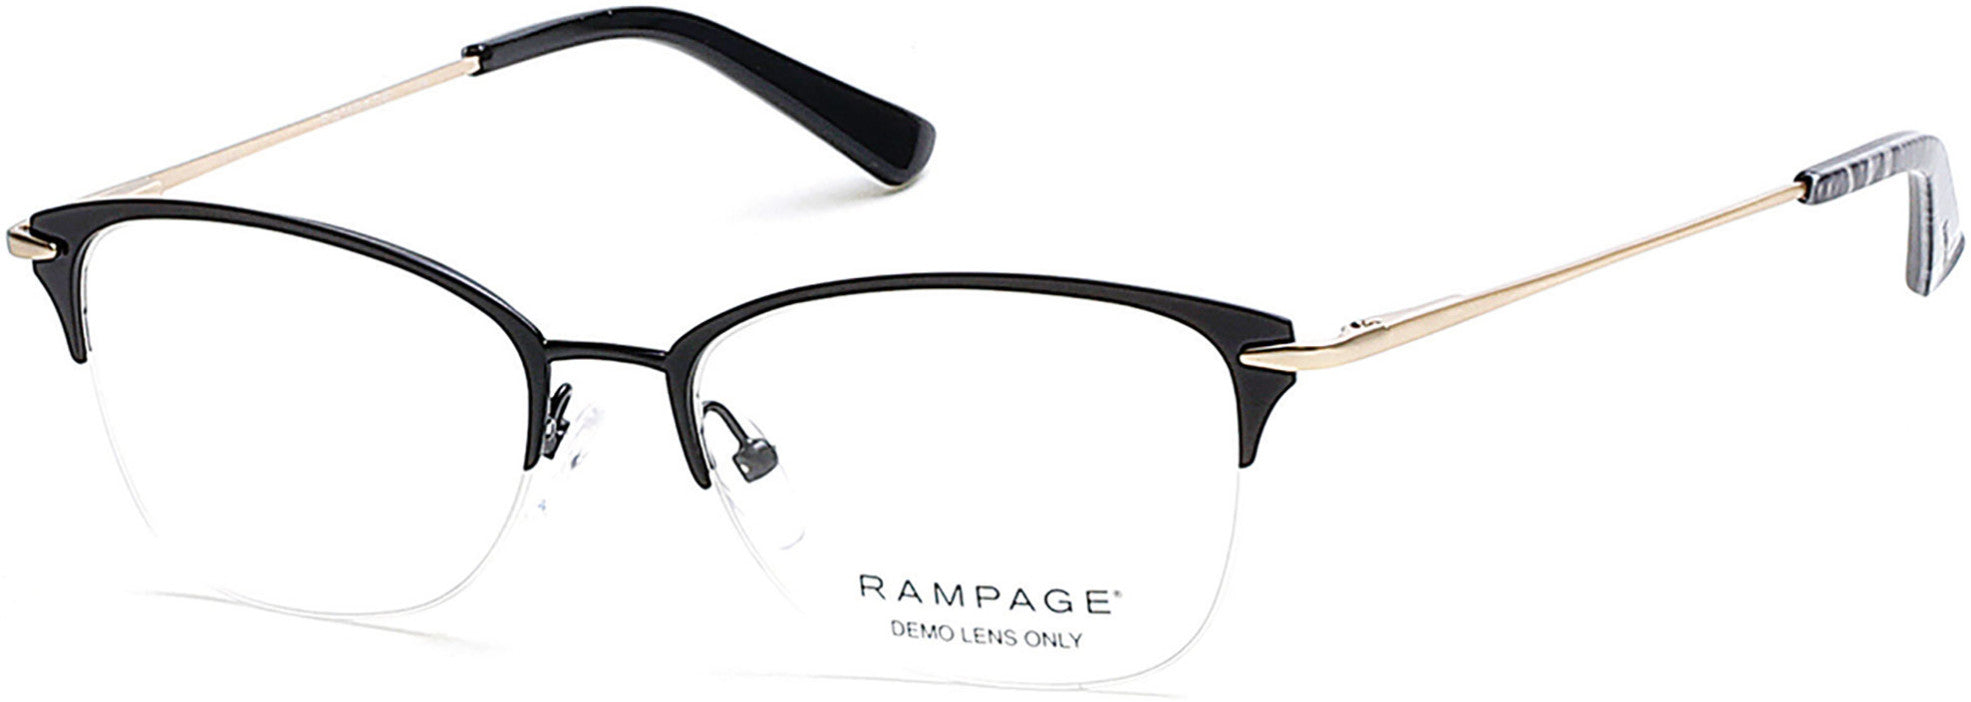 Rampage Round RA0202 Eyeglasses 002-002 - Matte Black